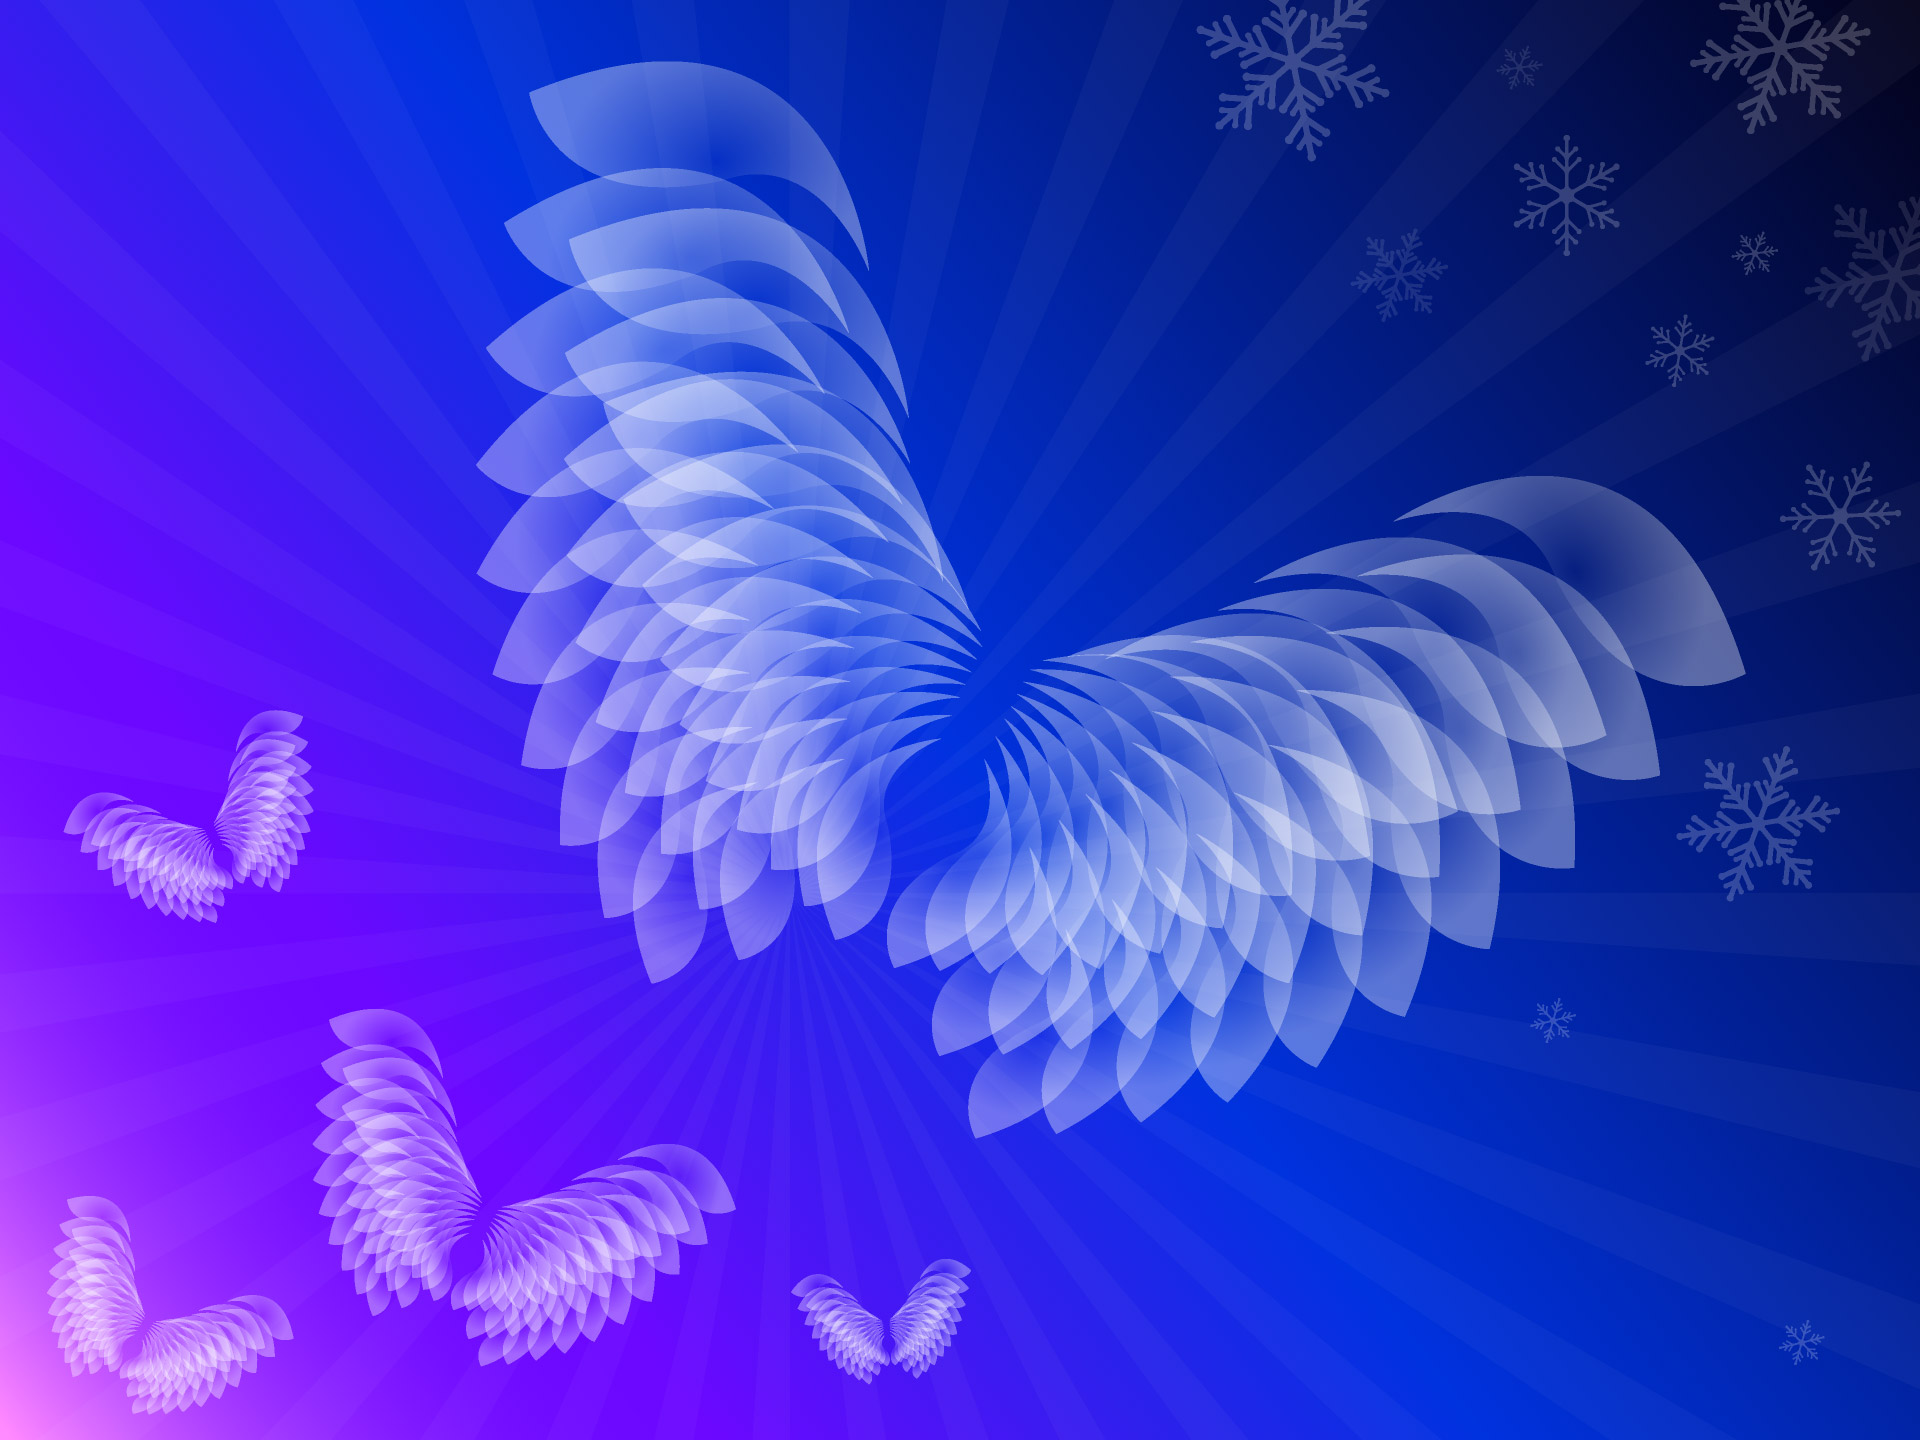 漂亮的翅膀雪花儿蓝色PPT背景图片